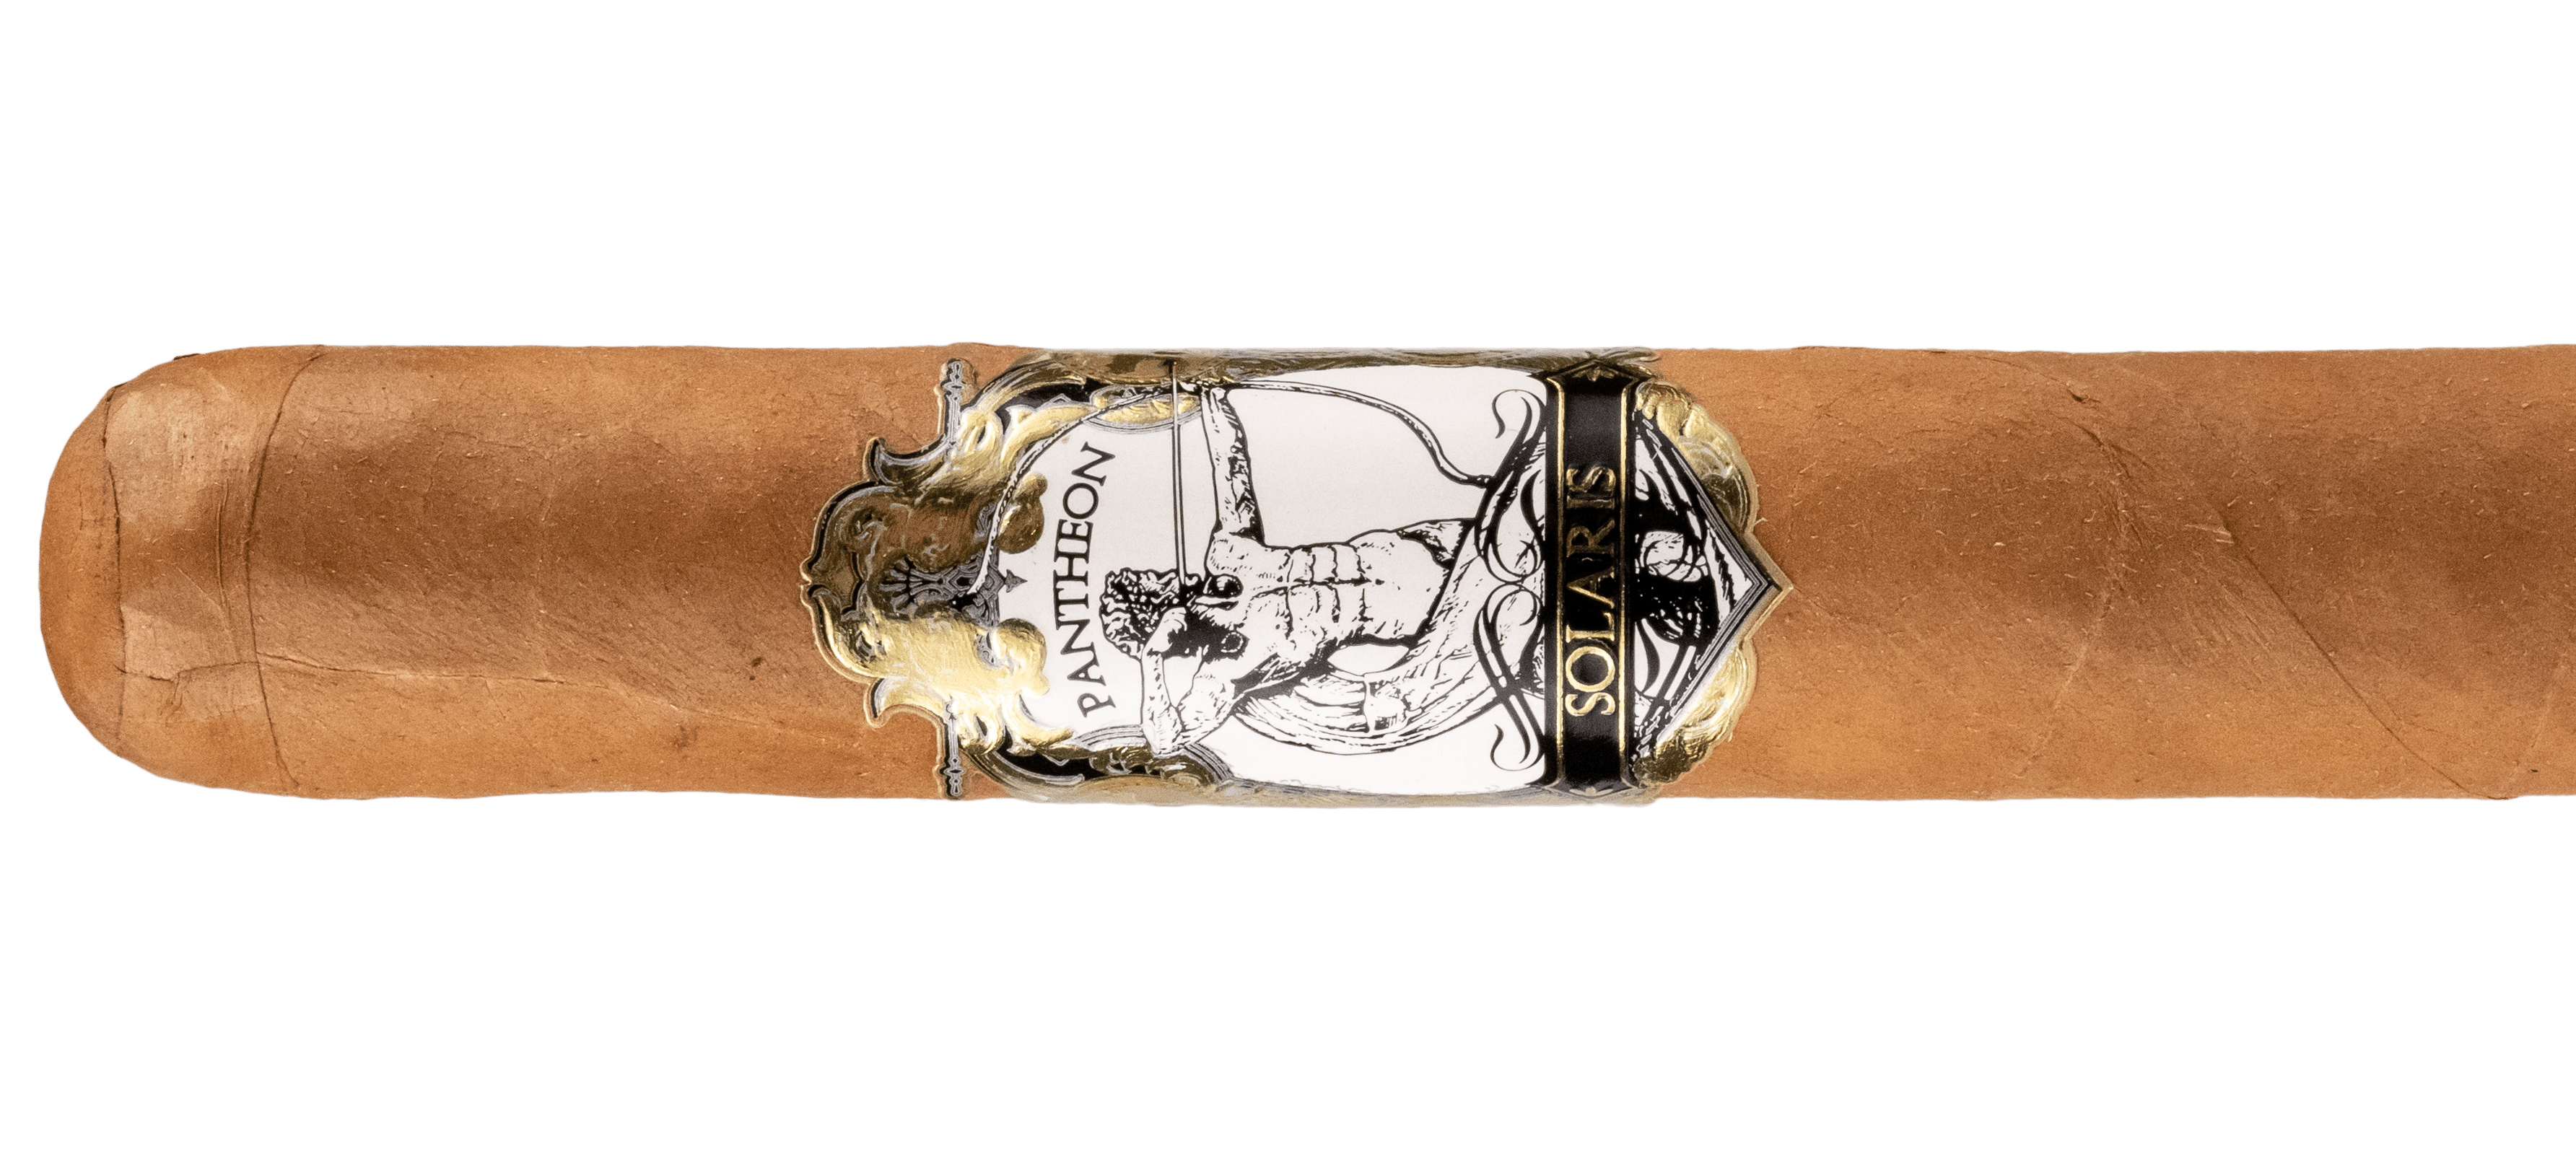 Blind Cigar Review: Pantheon | Solaris Toro